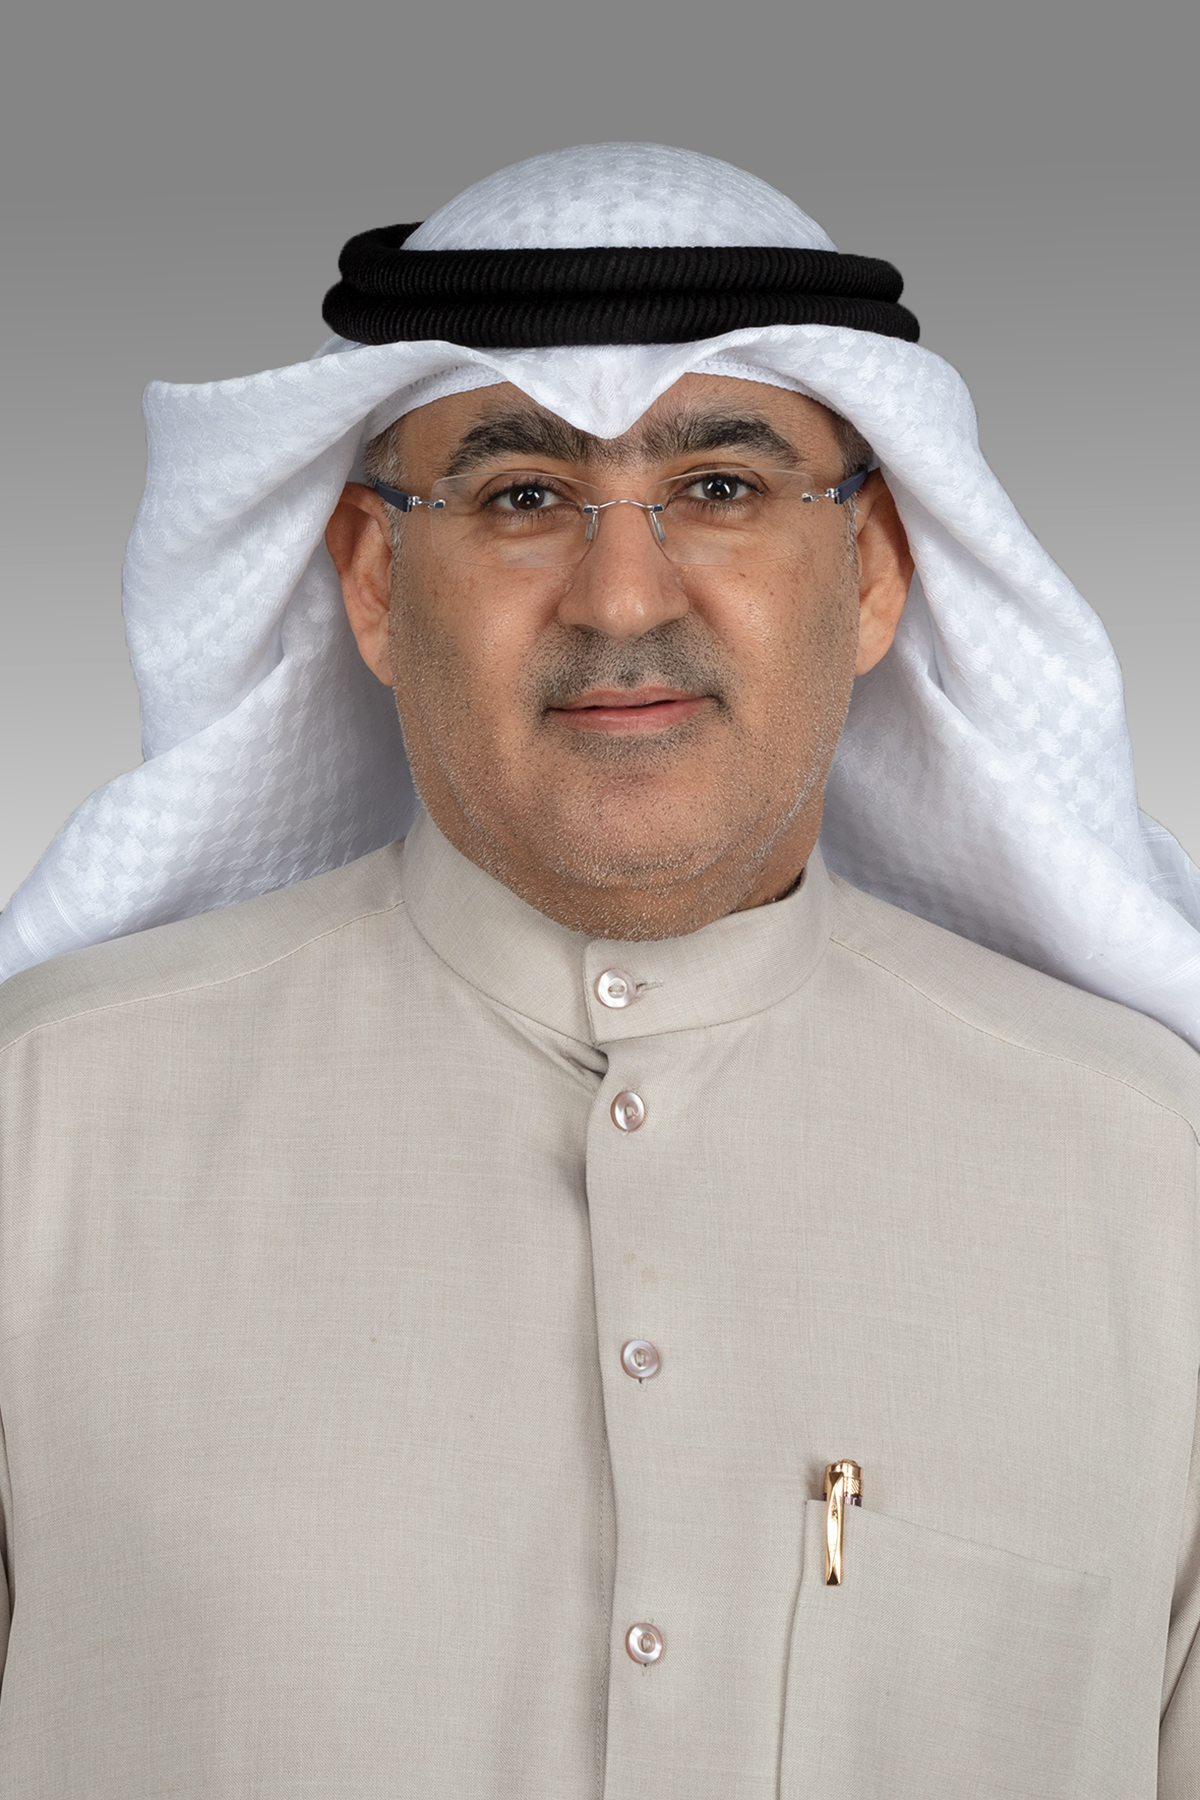 أحمد الحمد يقترح تدريب كوادر وطنية بالخارج لتشغيل مبنى المطار الجديد